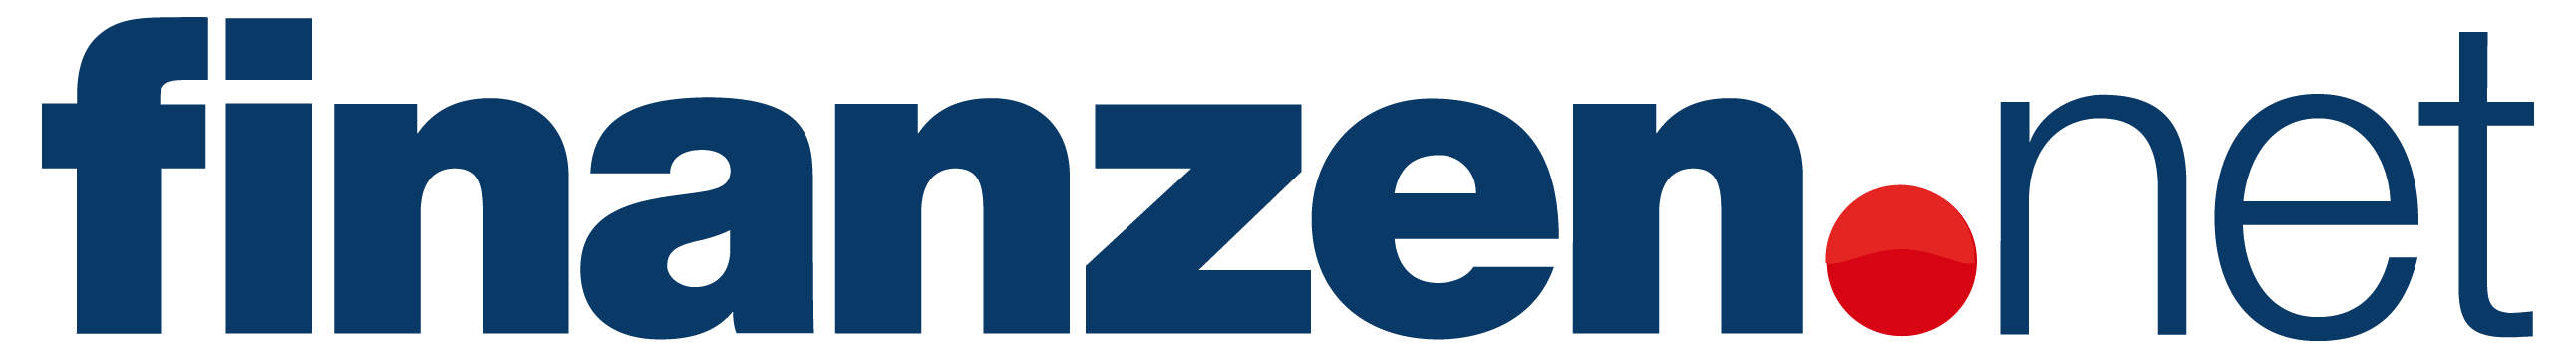 Finanzen net Logo komprimiert